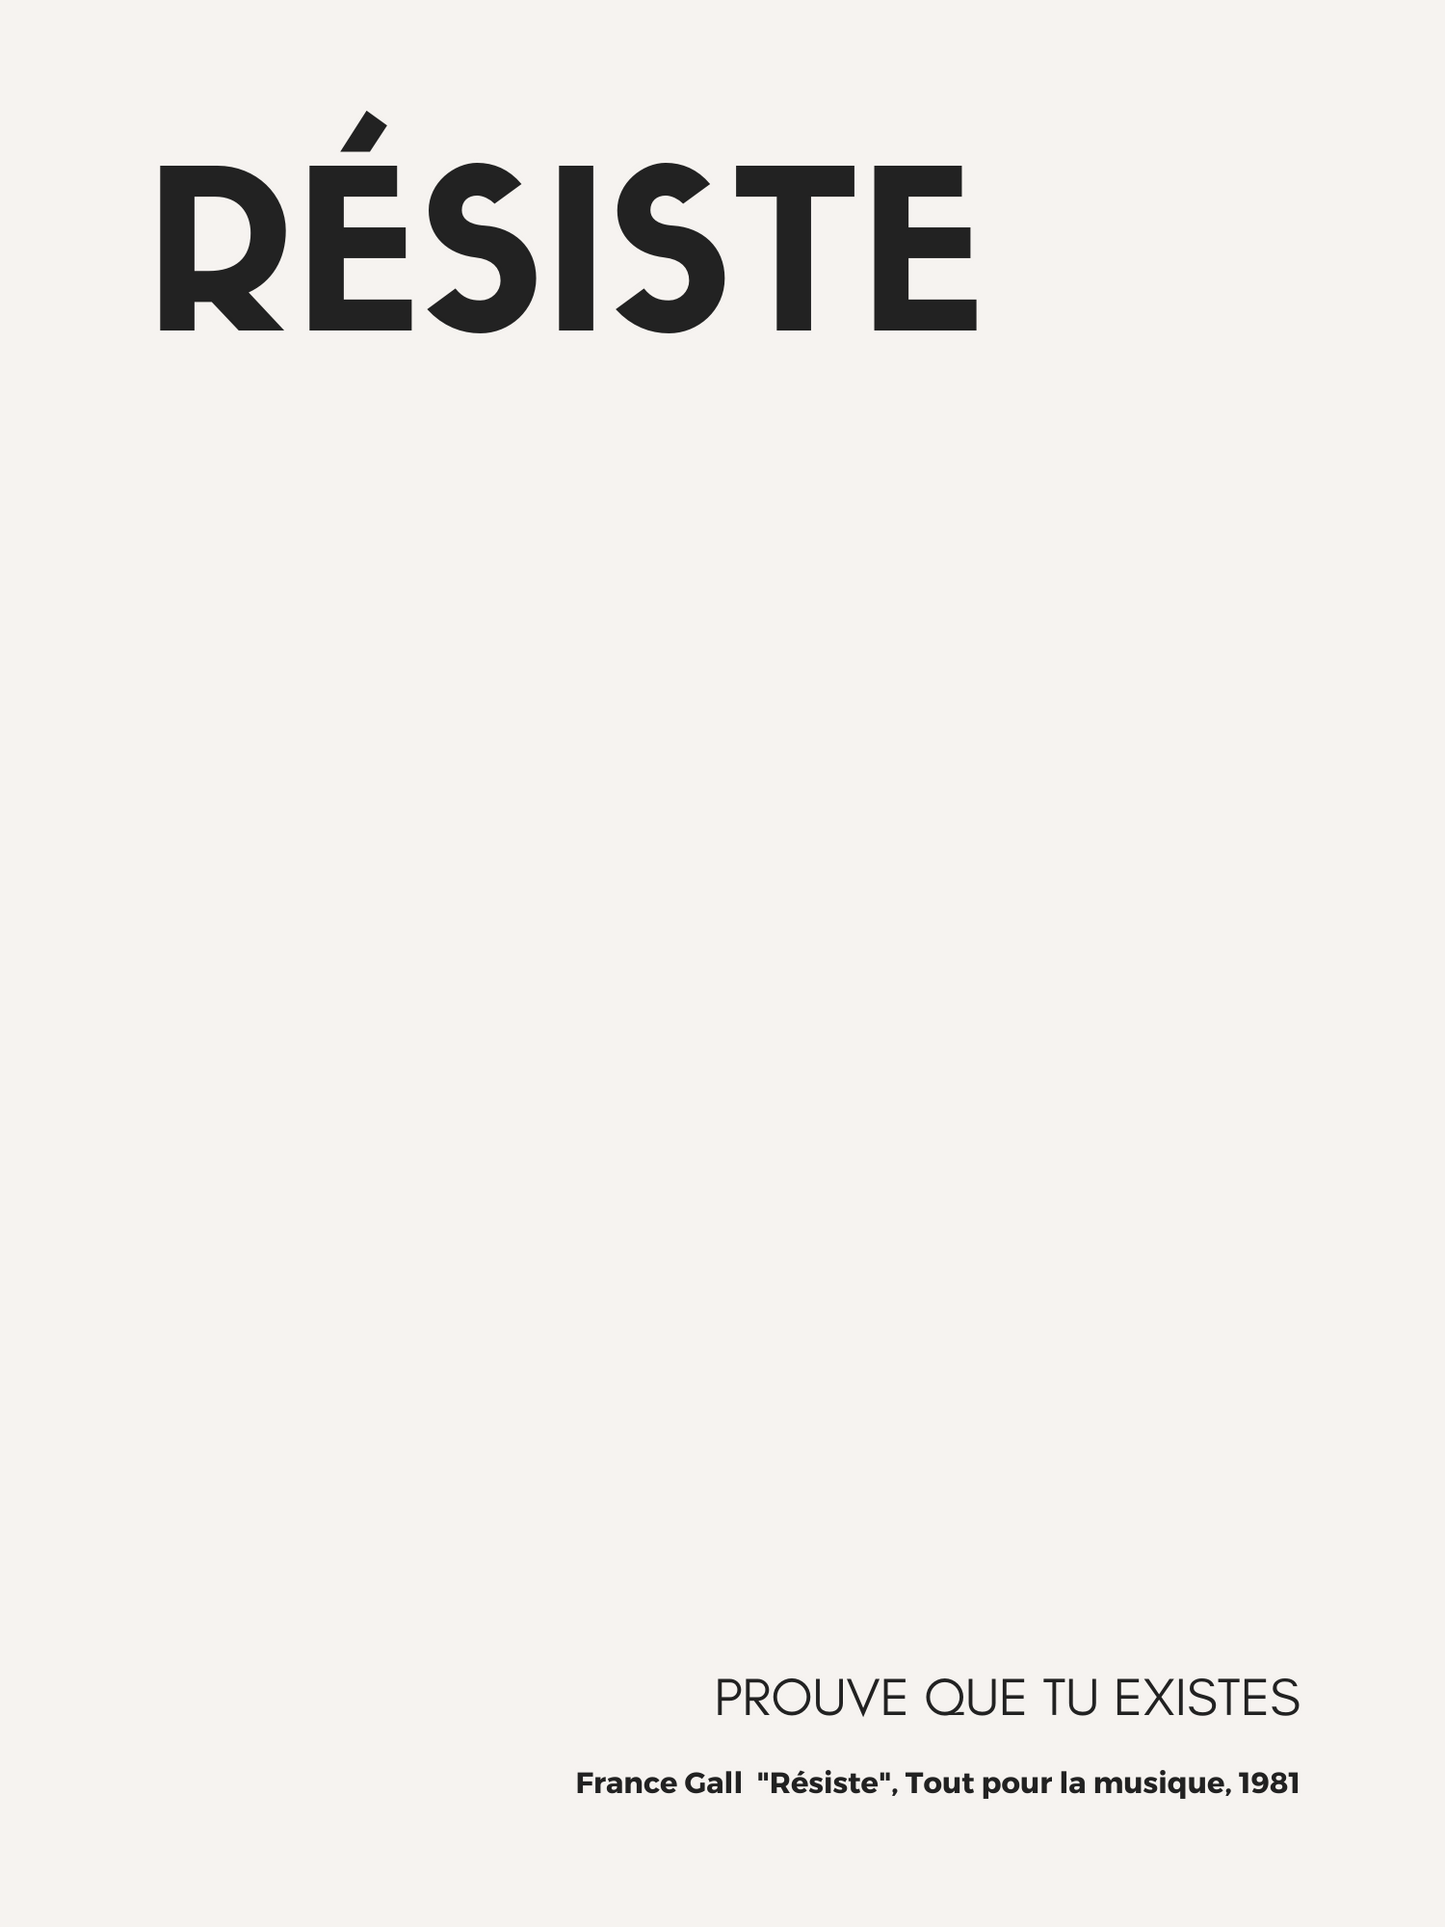 Affiche "Résiste", inspirée par France Gall